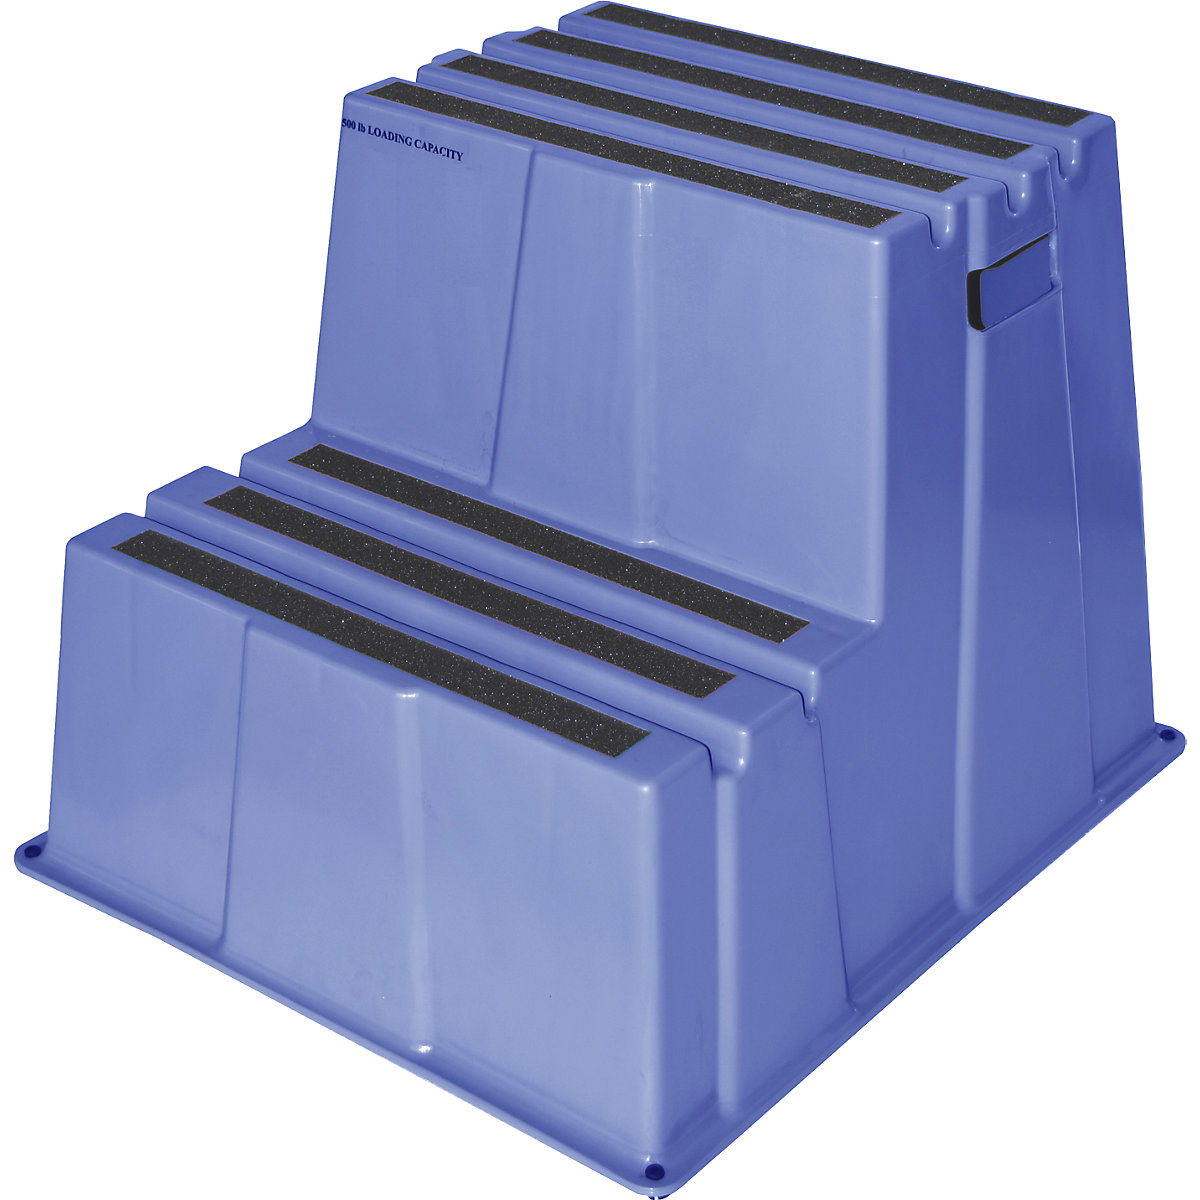 Scară din plastic cu trepte antiderapante – Twinco, capacitate portantă 150 kg, 2 trepte, albastru-9